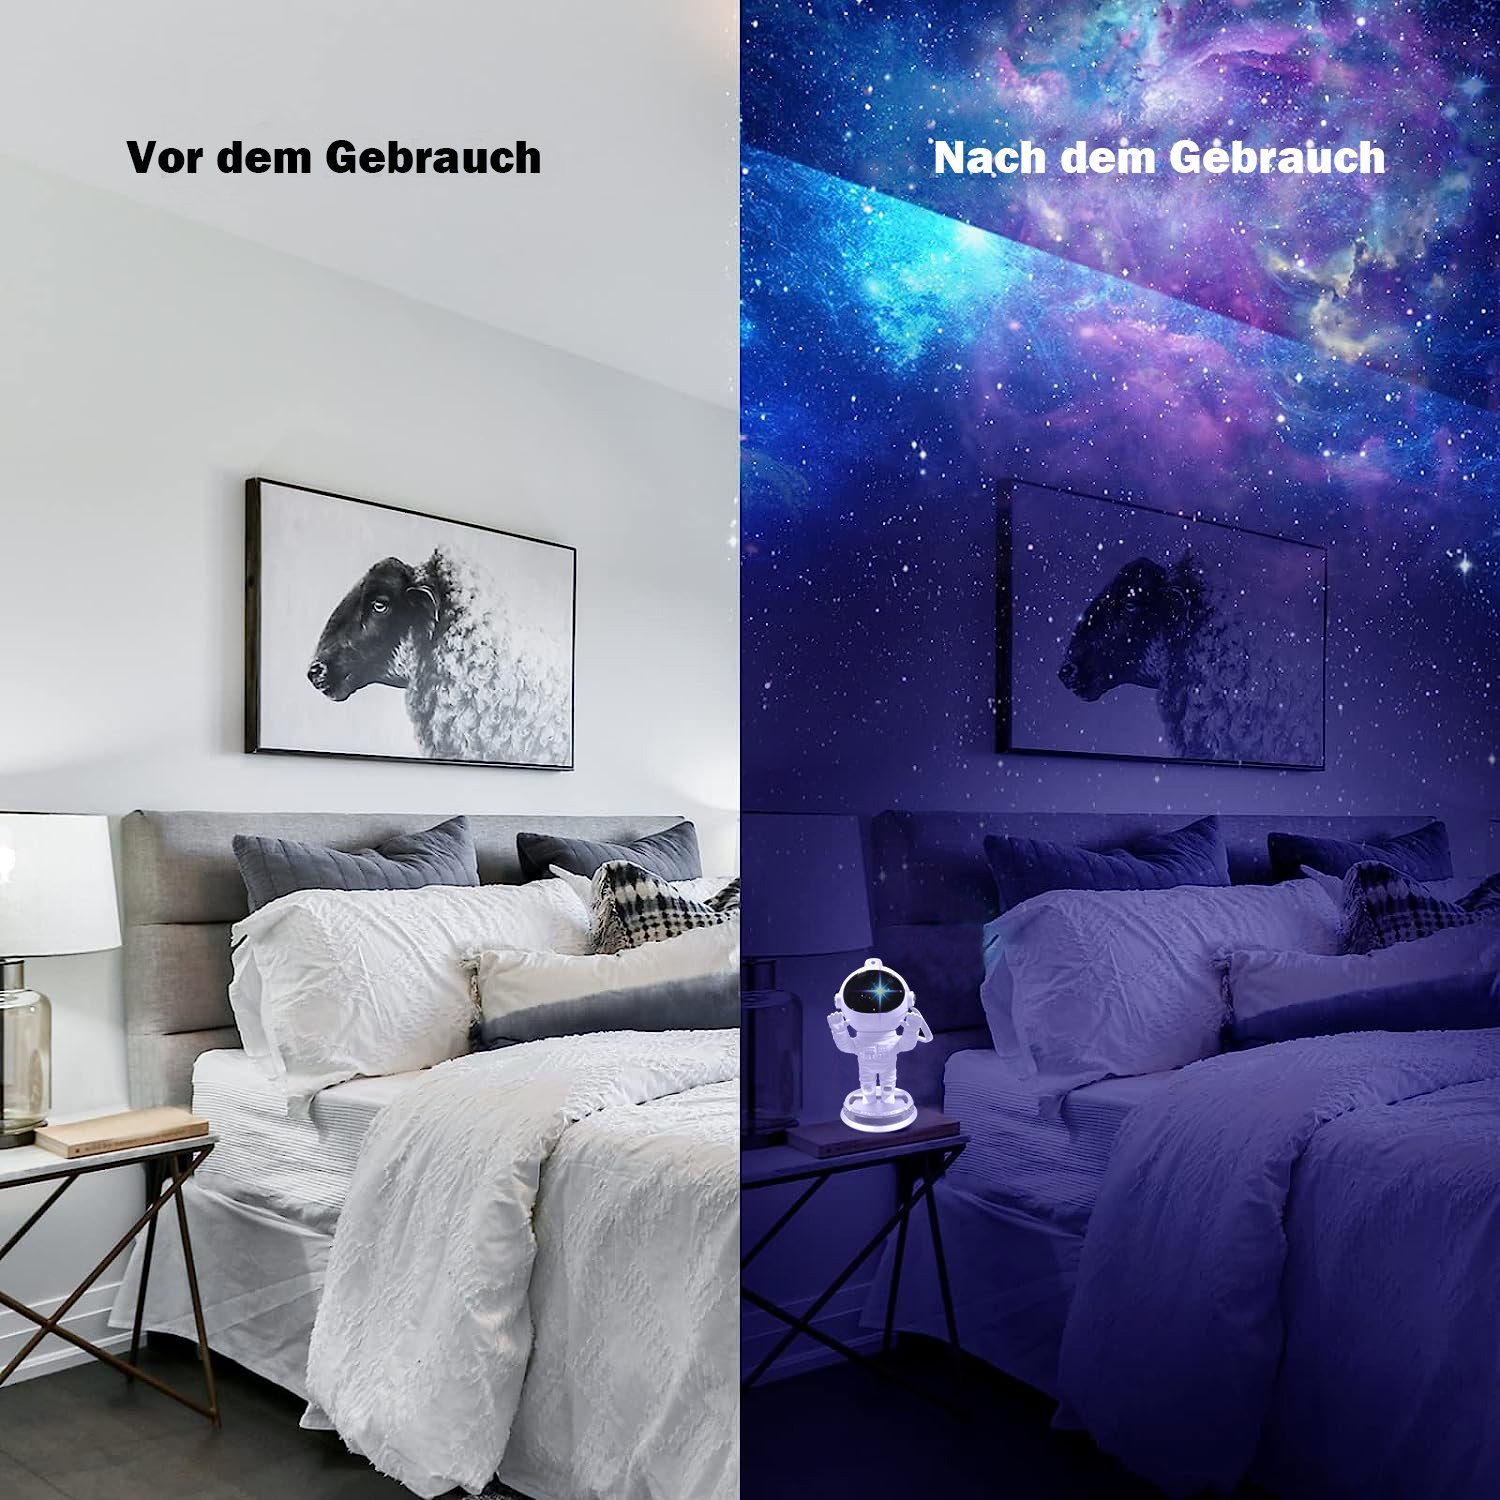 RGB Sunicol Sternenhimmel Nebula Mit Nachtlicht, LED Lampe Fernbedienung Galaxy, & Timer Lichtprojektor Nachtlicht Stern Astronaut Projektor,